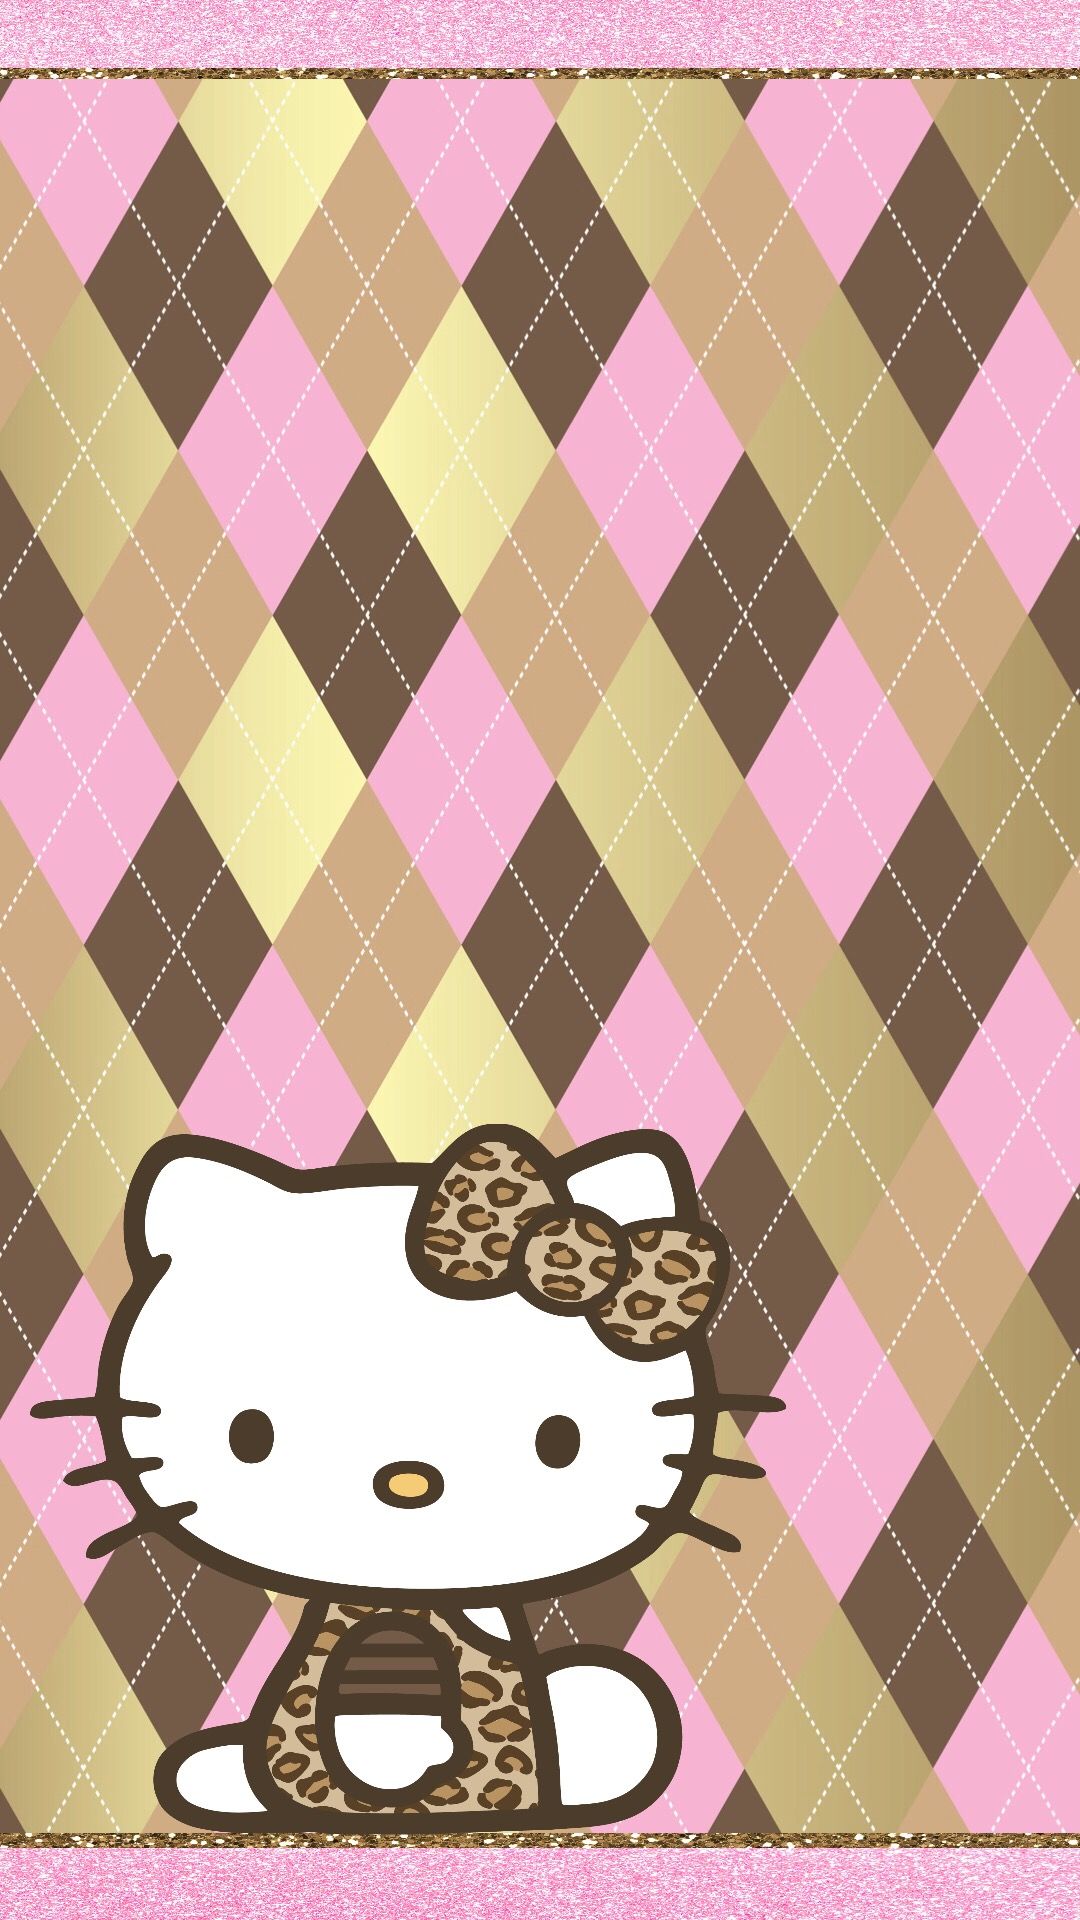 FONDOS DE PANTALLA. Hello kitty iphone wallpaper, Hello kitty wallpaper, Hello kitty background